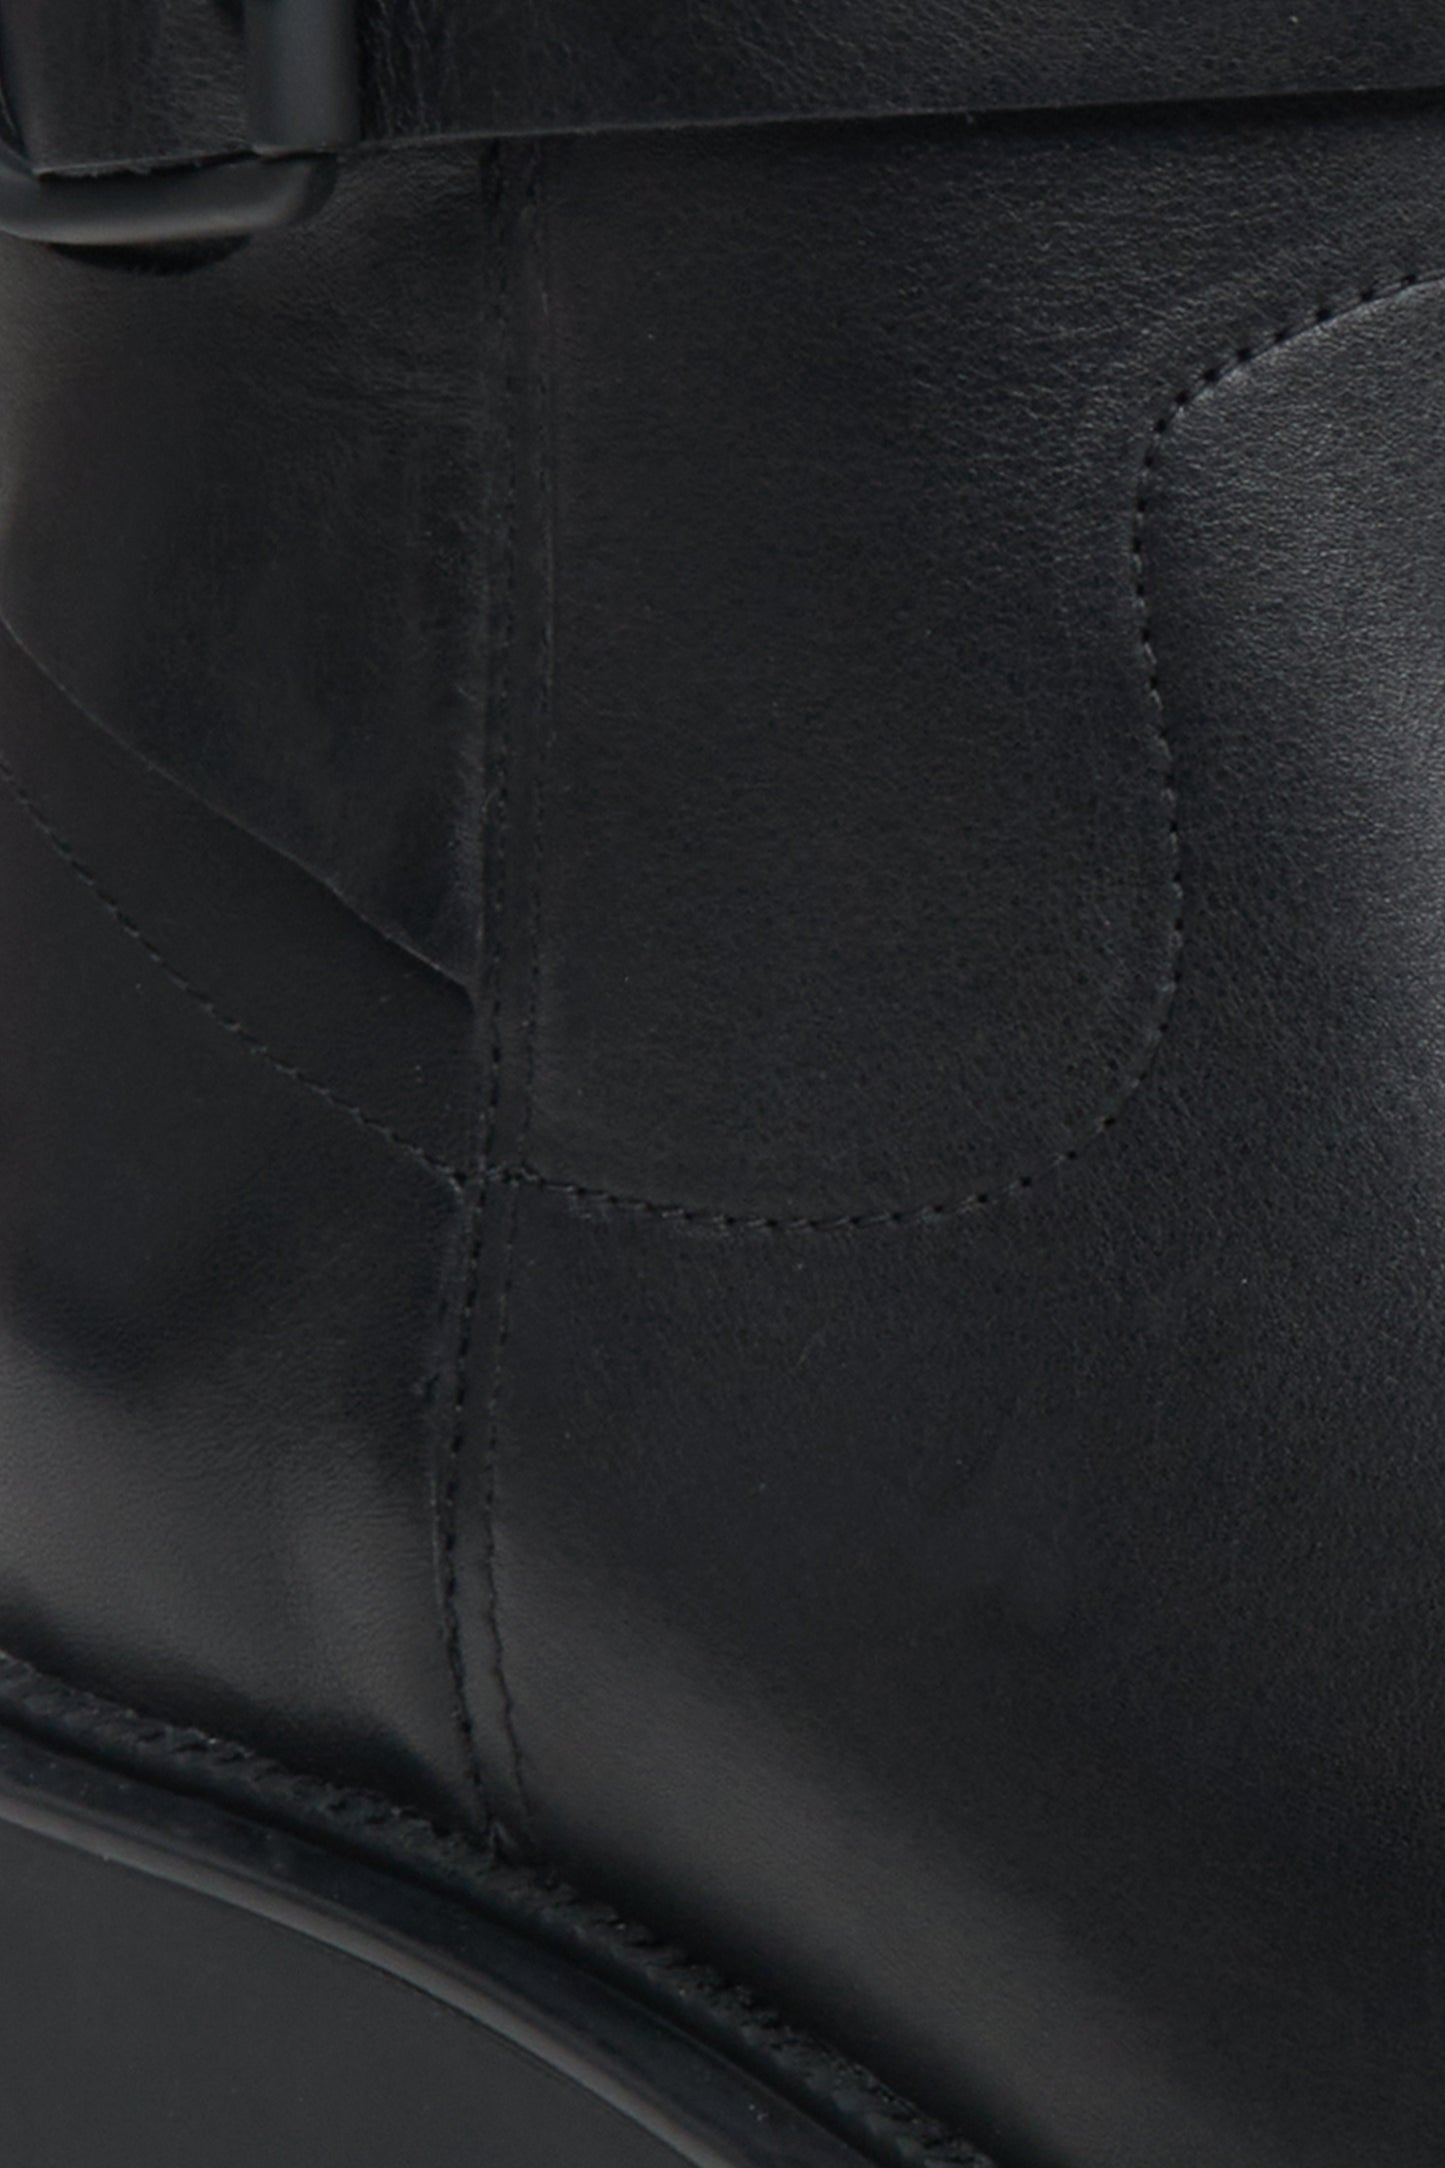 Skórzane botki damskie w kolorze czarnym z miękką cholewą Estro - zbliżenie na detale.